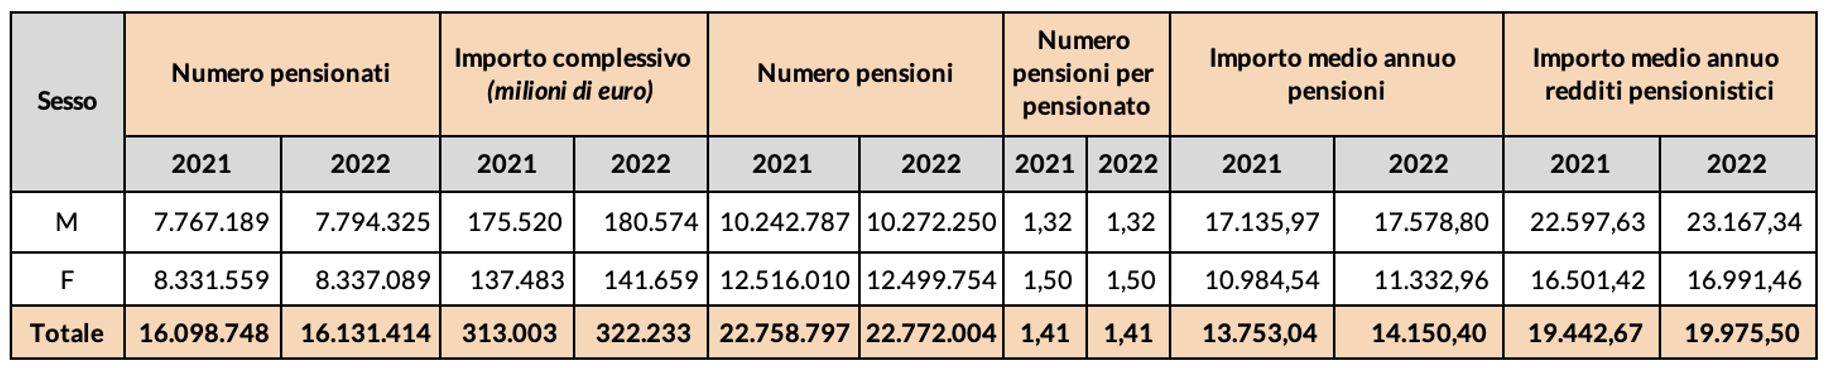 Tabella 1 – Numero pensioni e pensionati, importo complessivo, numero di prestazioni per pensionato, importo medio annuo delle pensioni e del reddito pensionistico 